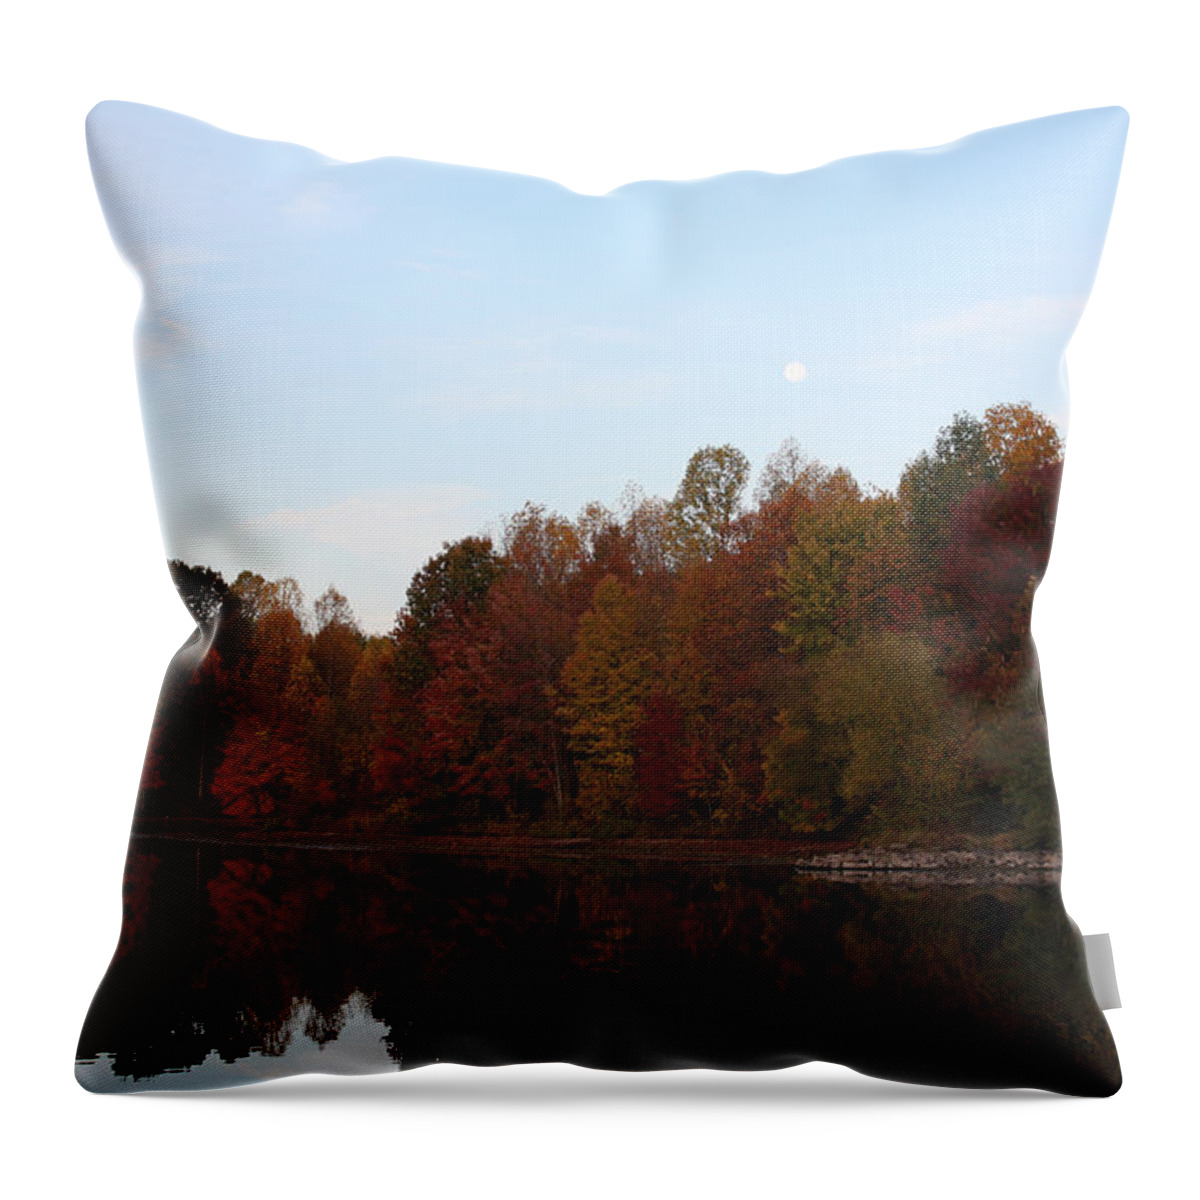 Centennial Throw Pillow featuring the photograph Centennial Lake Autumn - Northeast Colors by Ronald Reid